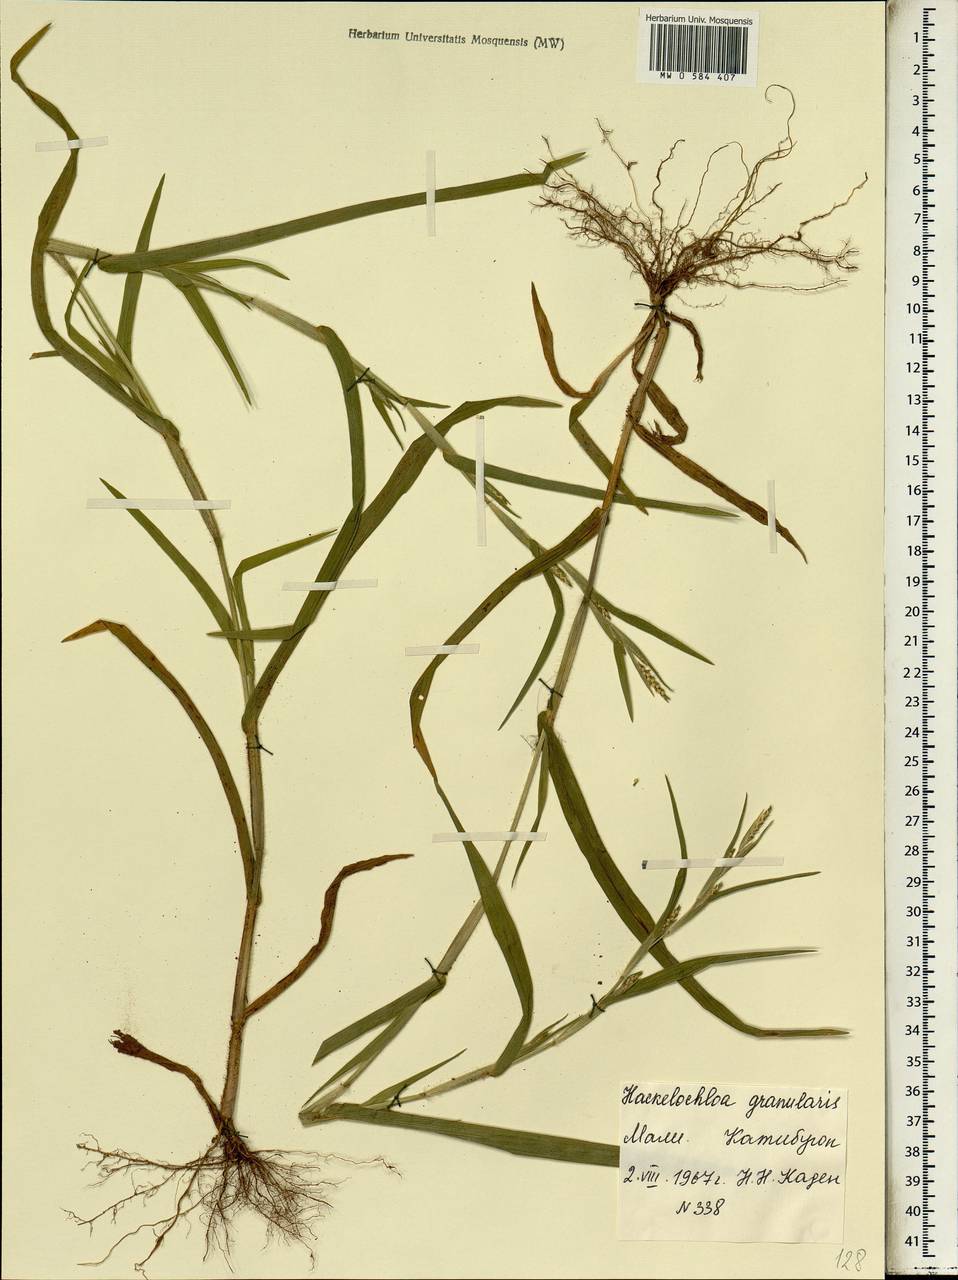 Hackelochloa granularis (L.) Kuntze, Africa (AFR) (Mali)